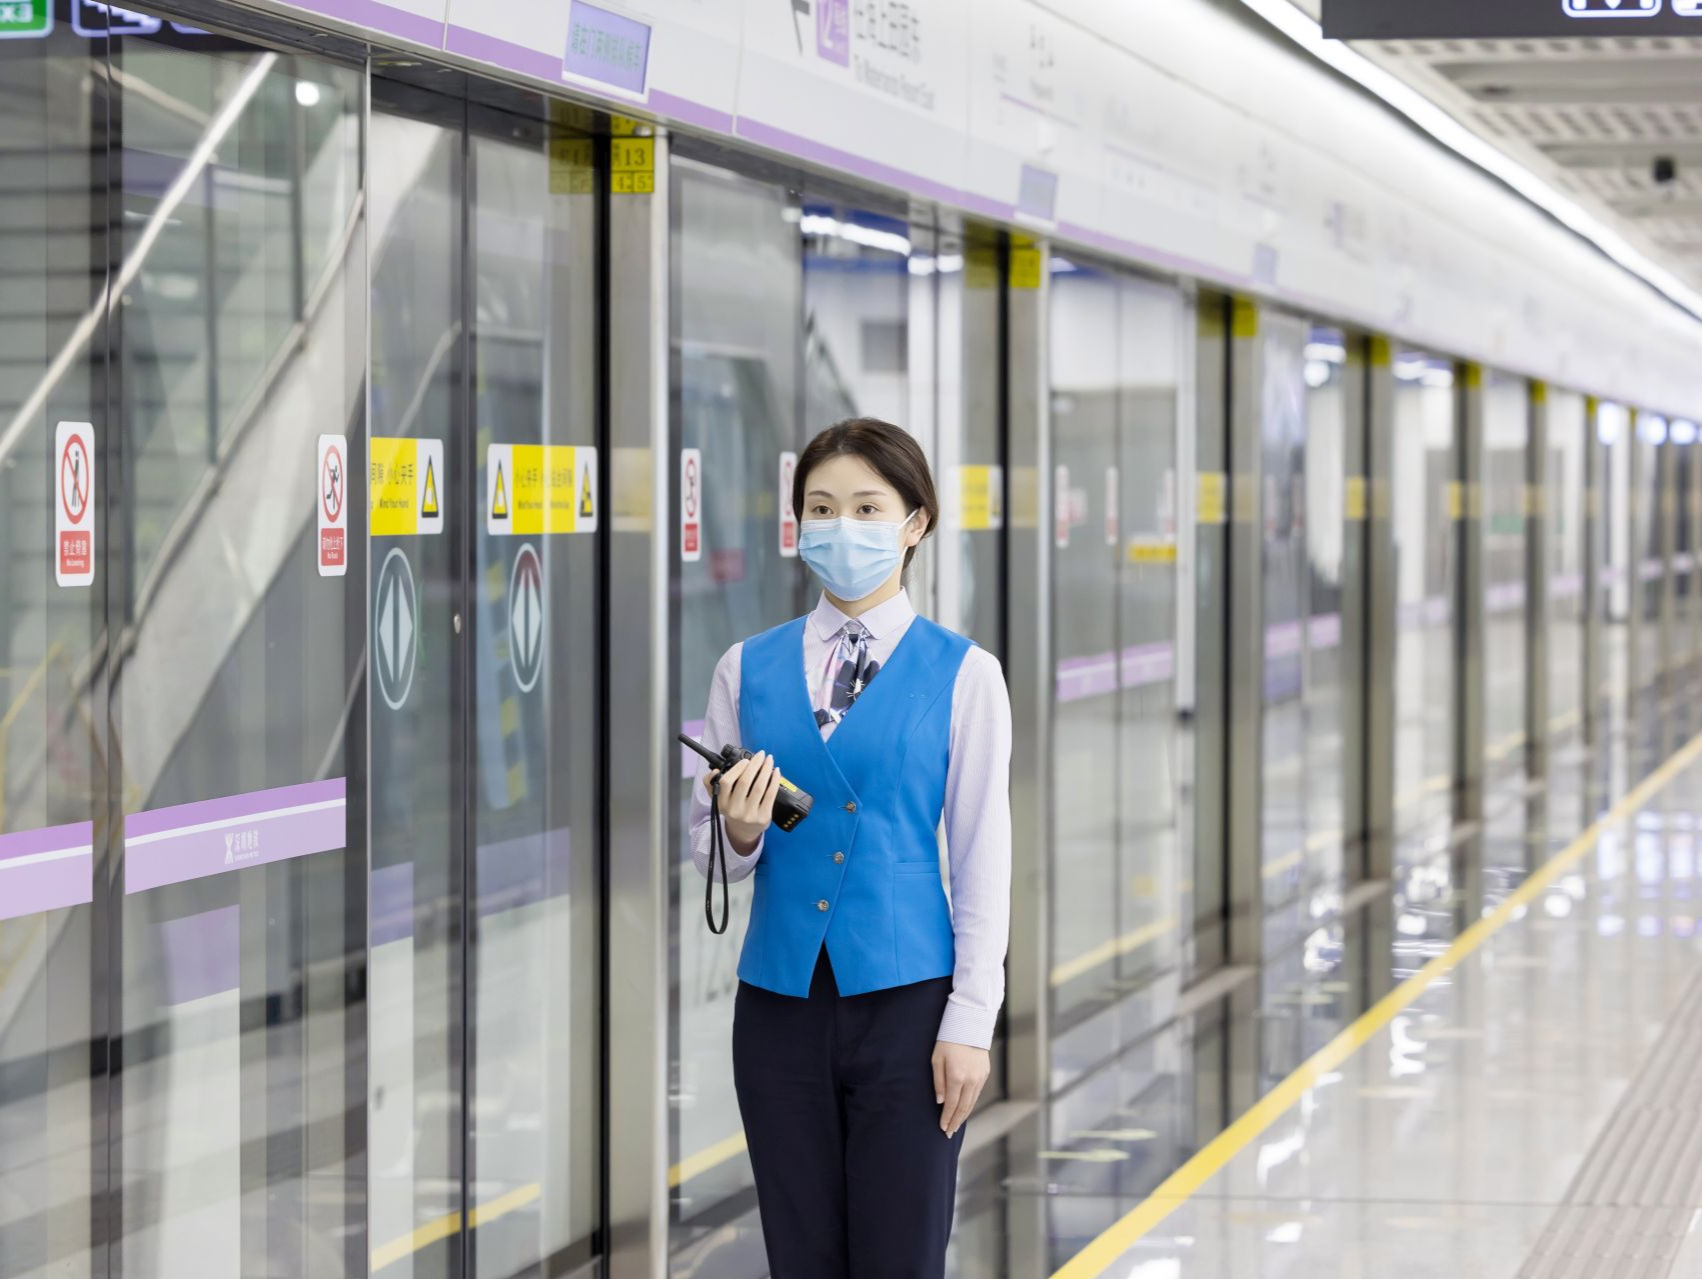 最晚延长至24:00！深圳地铁12号线3月9日起延长运营服务时间